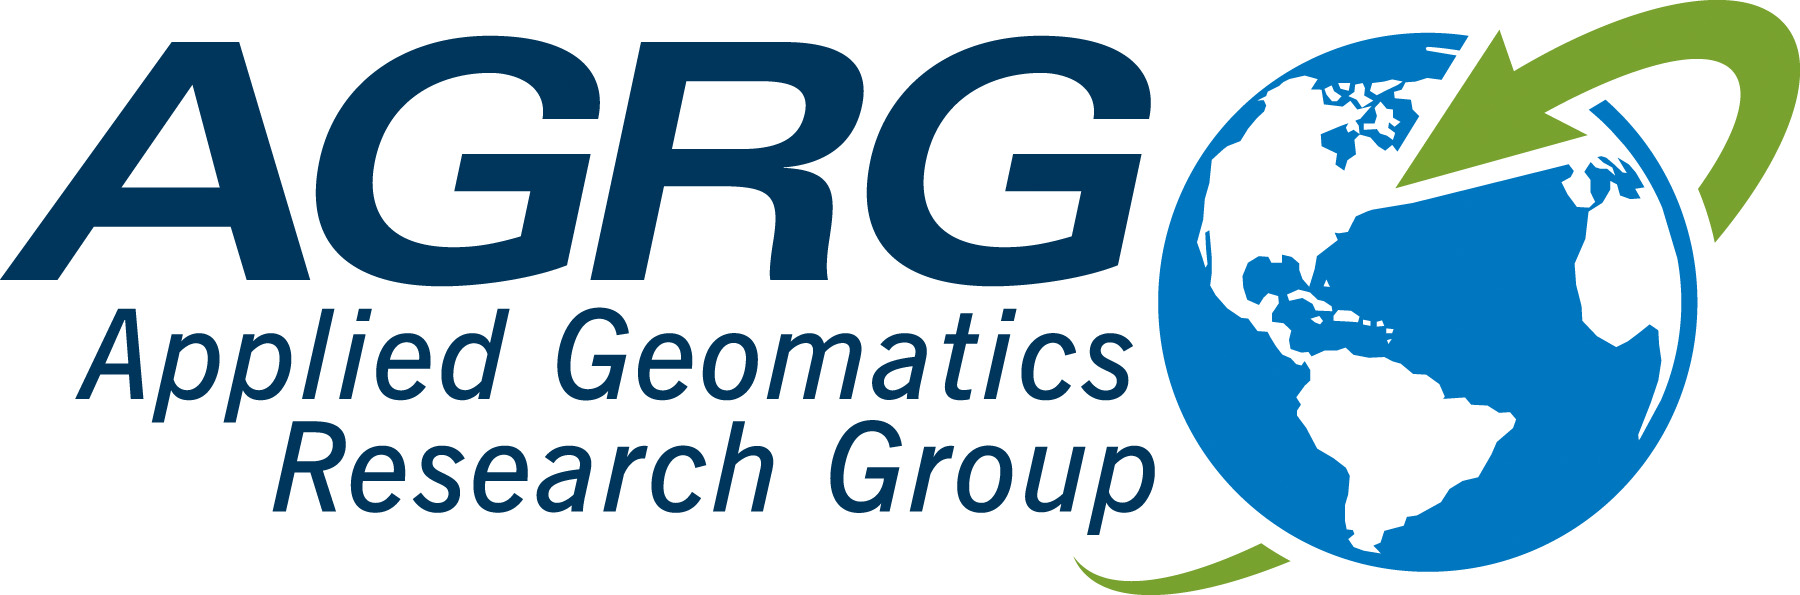 AGRG logo